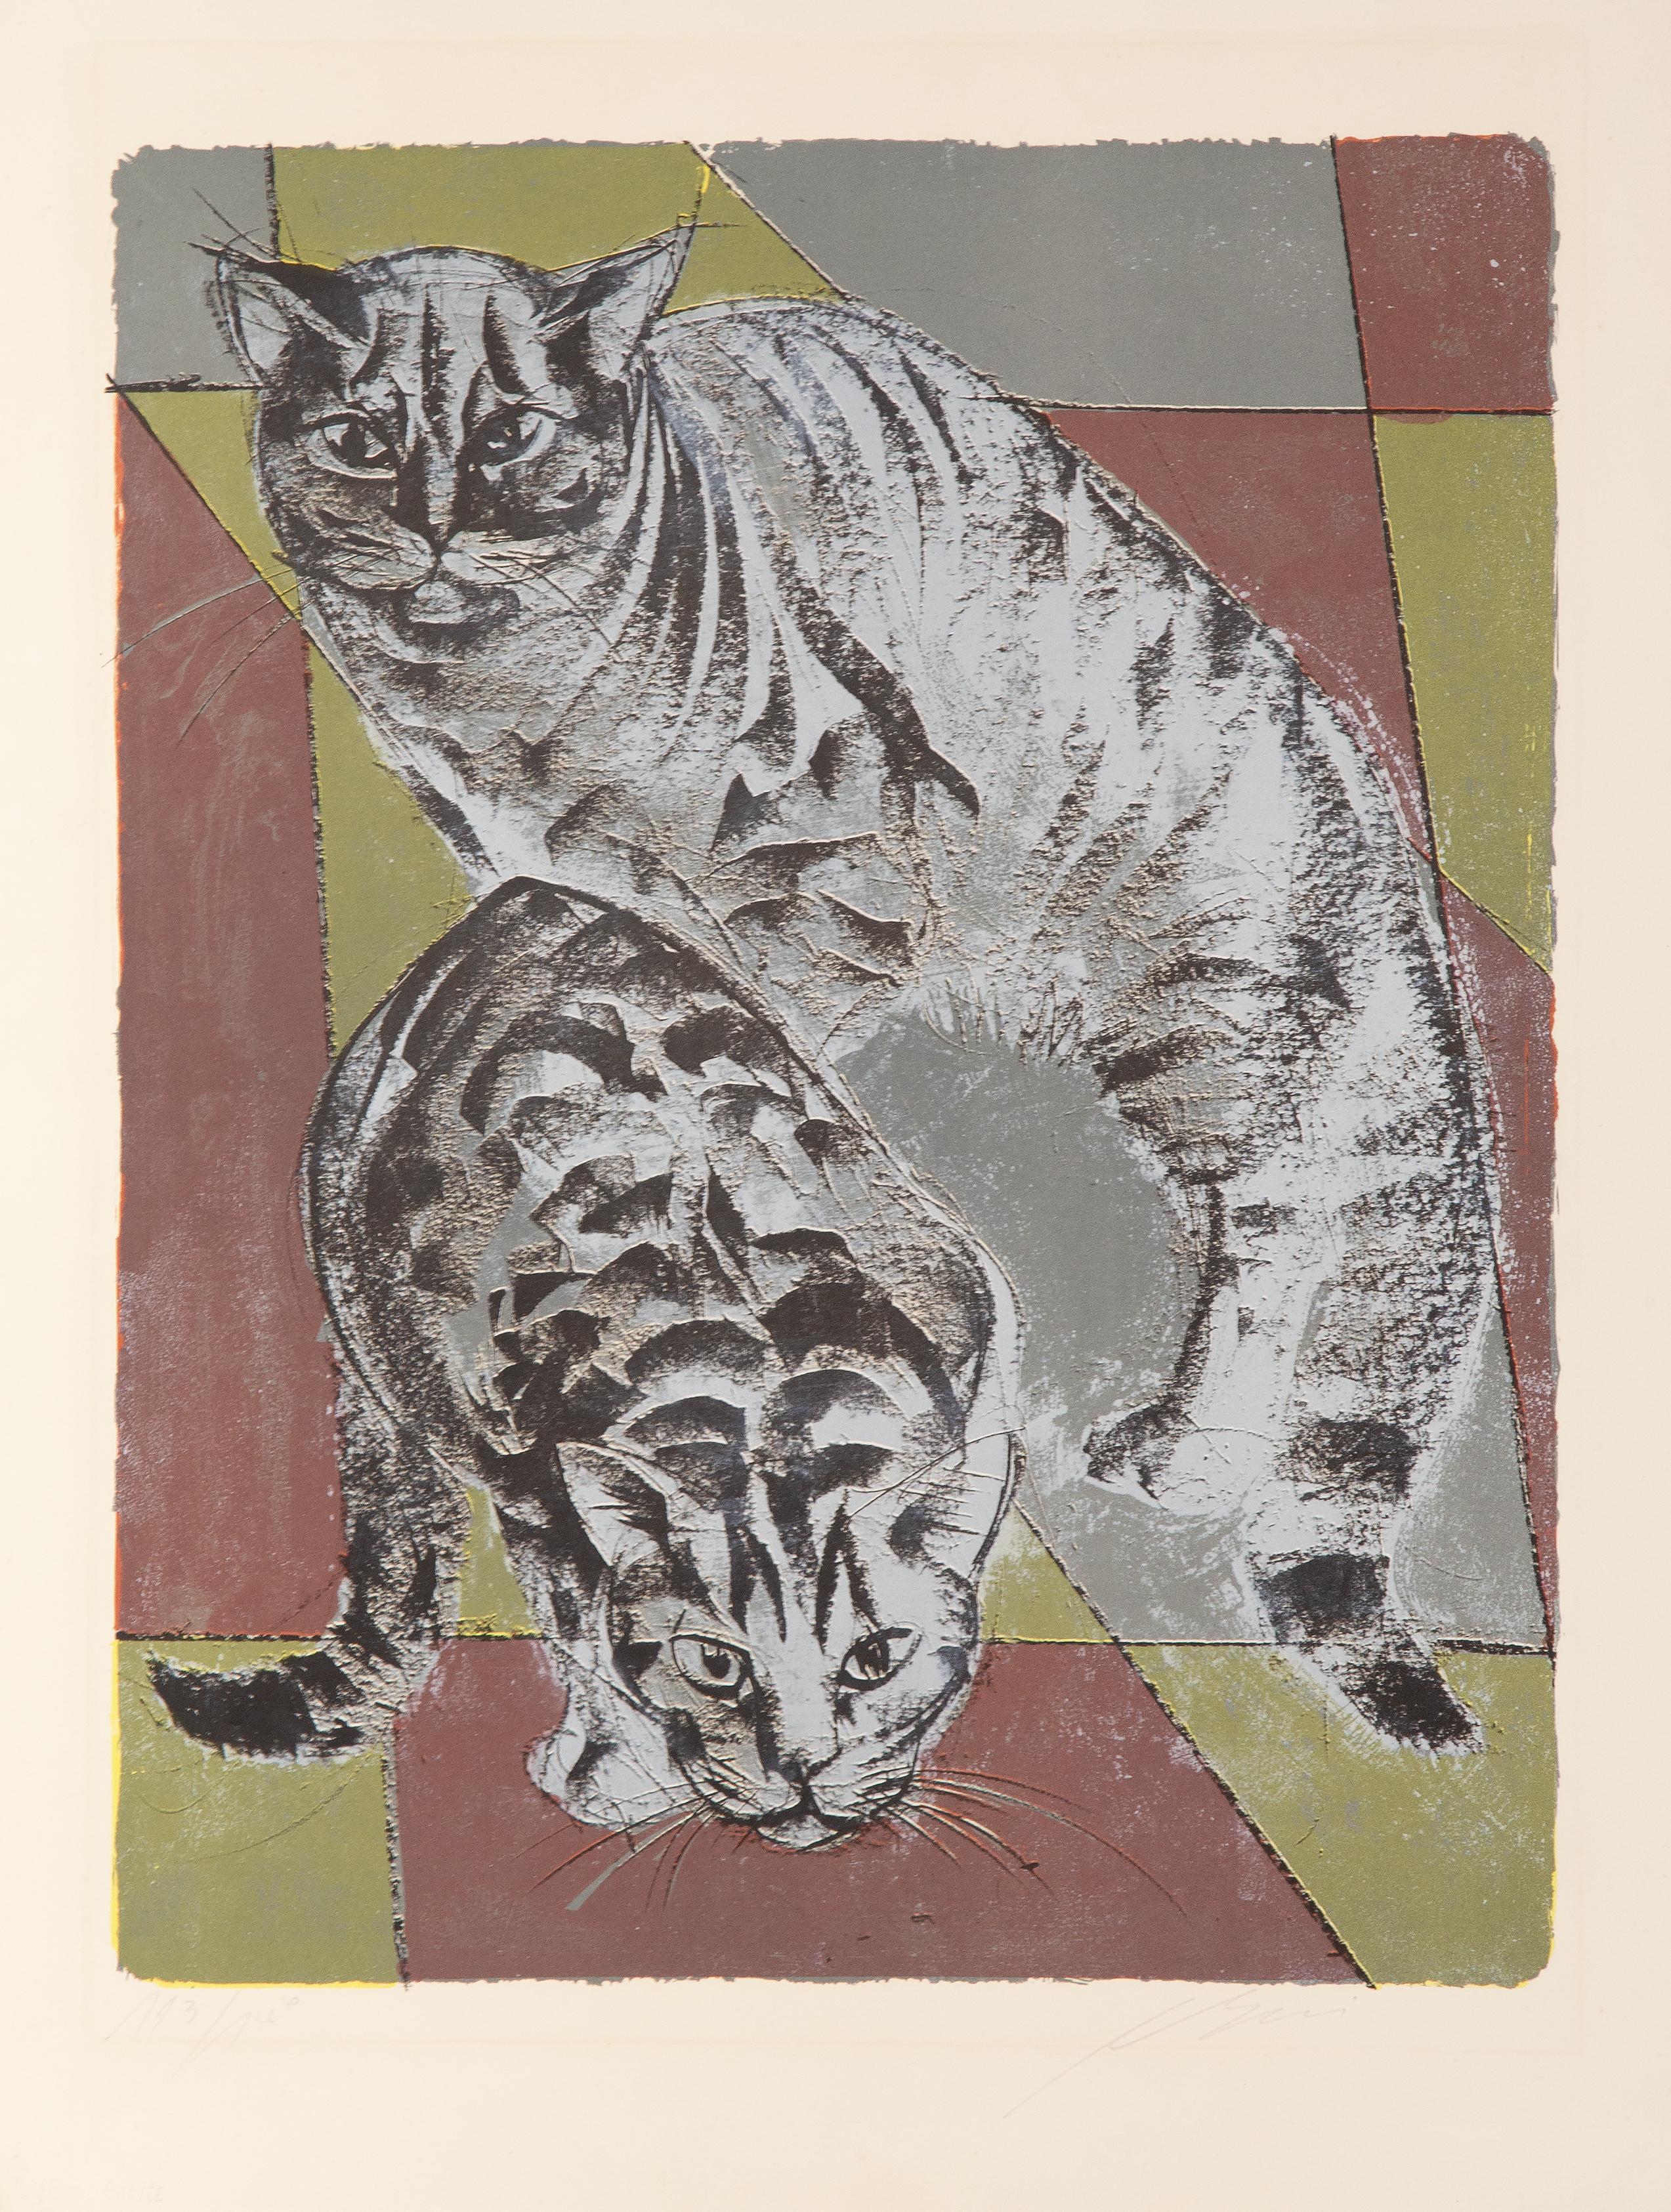 Les Chats
Hans Erni, Suisse (1909-2015)
Date : 1962
Lithographie, signée et numérotée au crayon
Edition de 3/385
Taille de l'image : 20.75 x 16 pouces
Taille : 25.5 x 19.75 in. (64.77 x 50.17 cm)